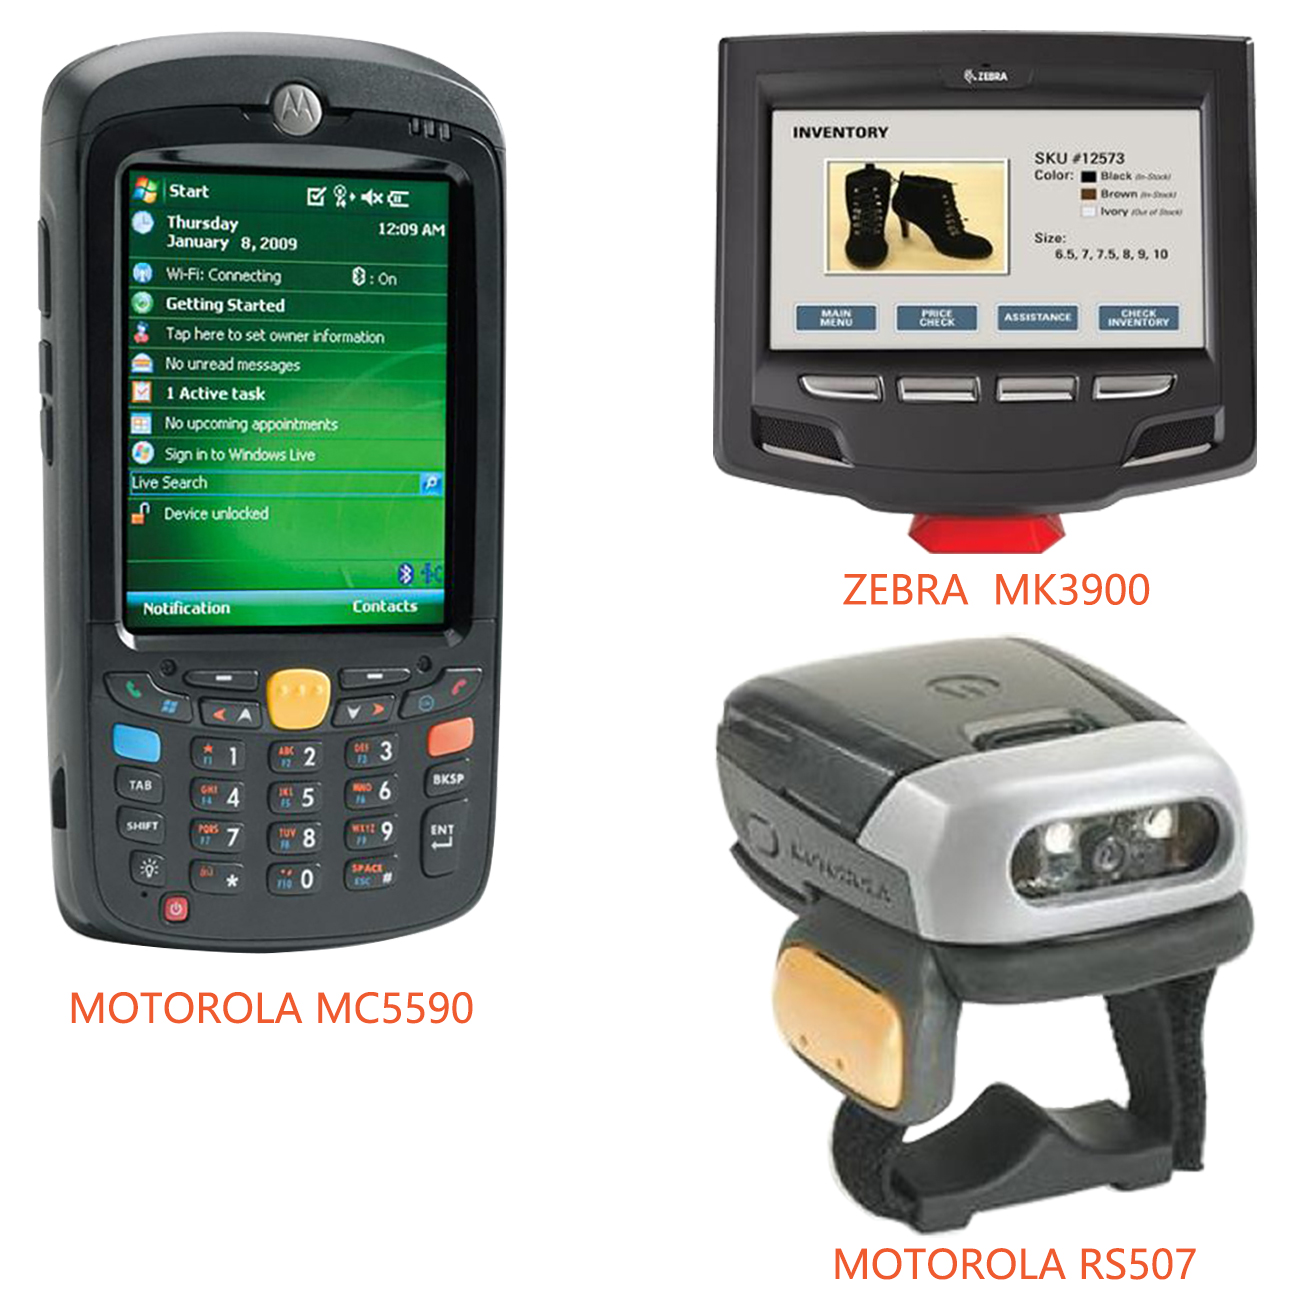 斑马Zebra，摩托罗拉Motorola， 讯宝Symbols，扫描仪的扫描引擎， SE4500 scan engine, 2D QR coder Scan Engine,  MC65、MC659B，MC9190G, MC67N0, MC40, MC40N0,  MC5590, MC75，MC3190，MC9190，MC9500-K，MC9590-K，MK3900 sacn engine, 二维码、条形码扫描仪模组，激光扫描仪引擎 (20-106561-xx)，镭射扫描头组件